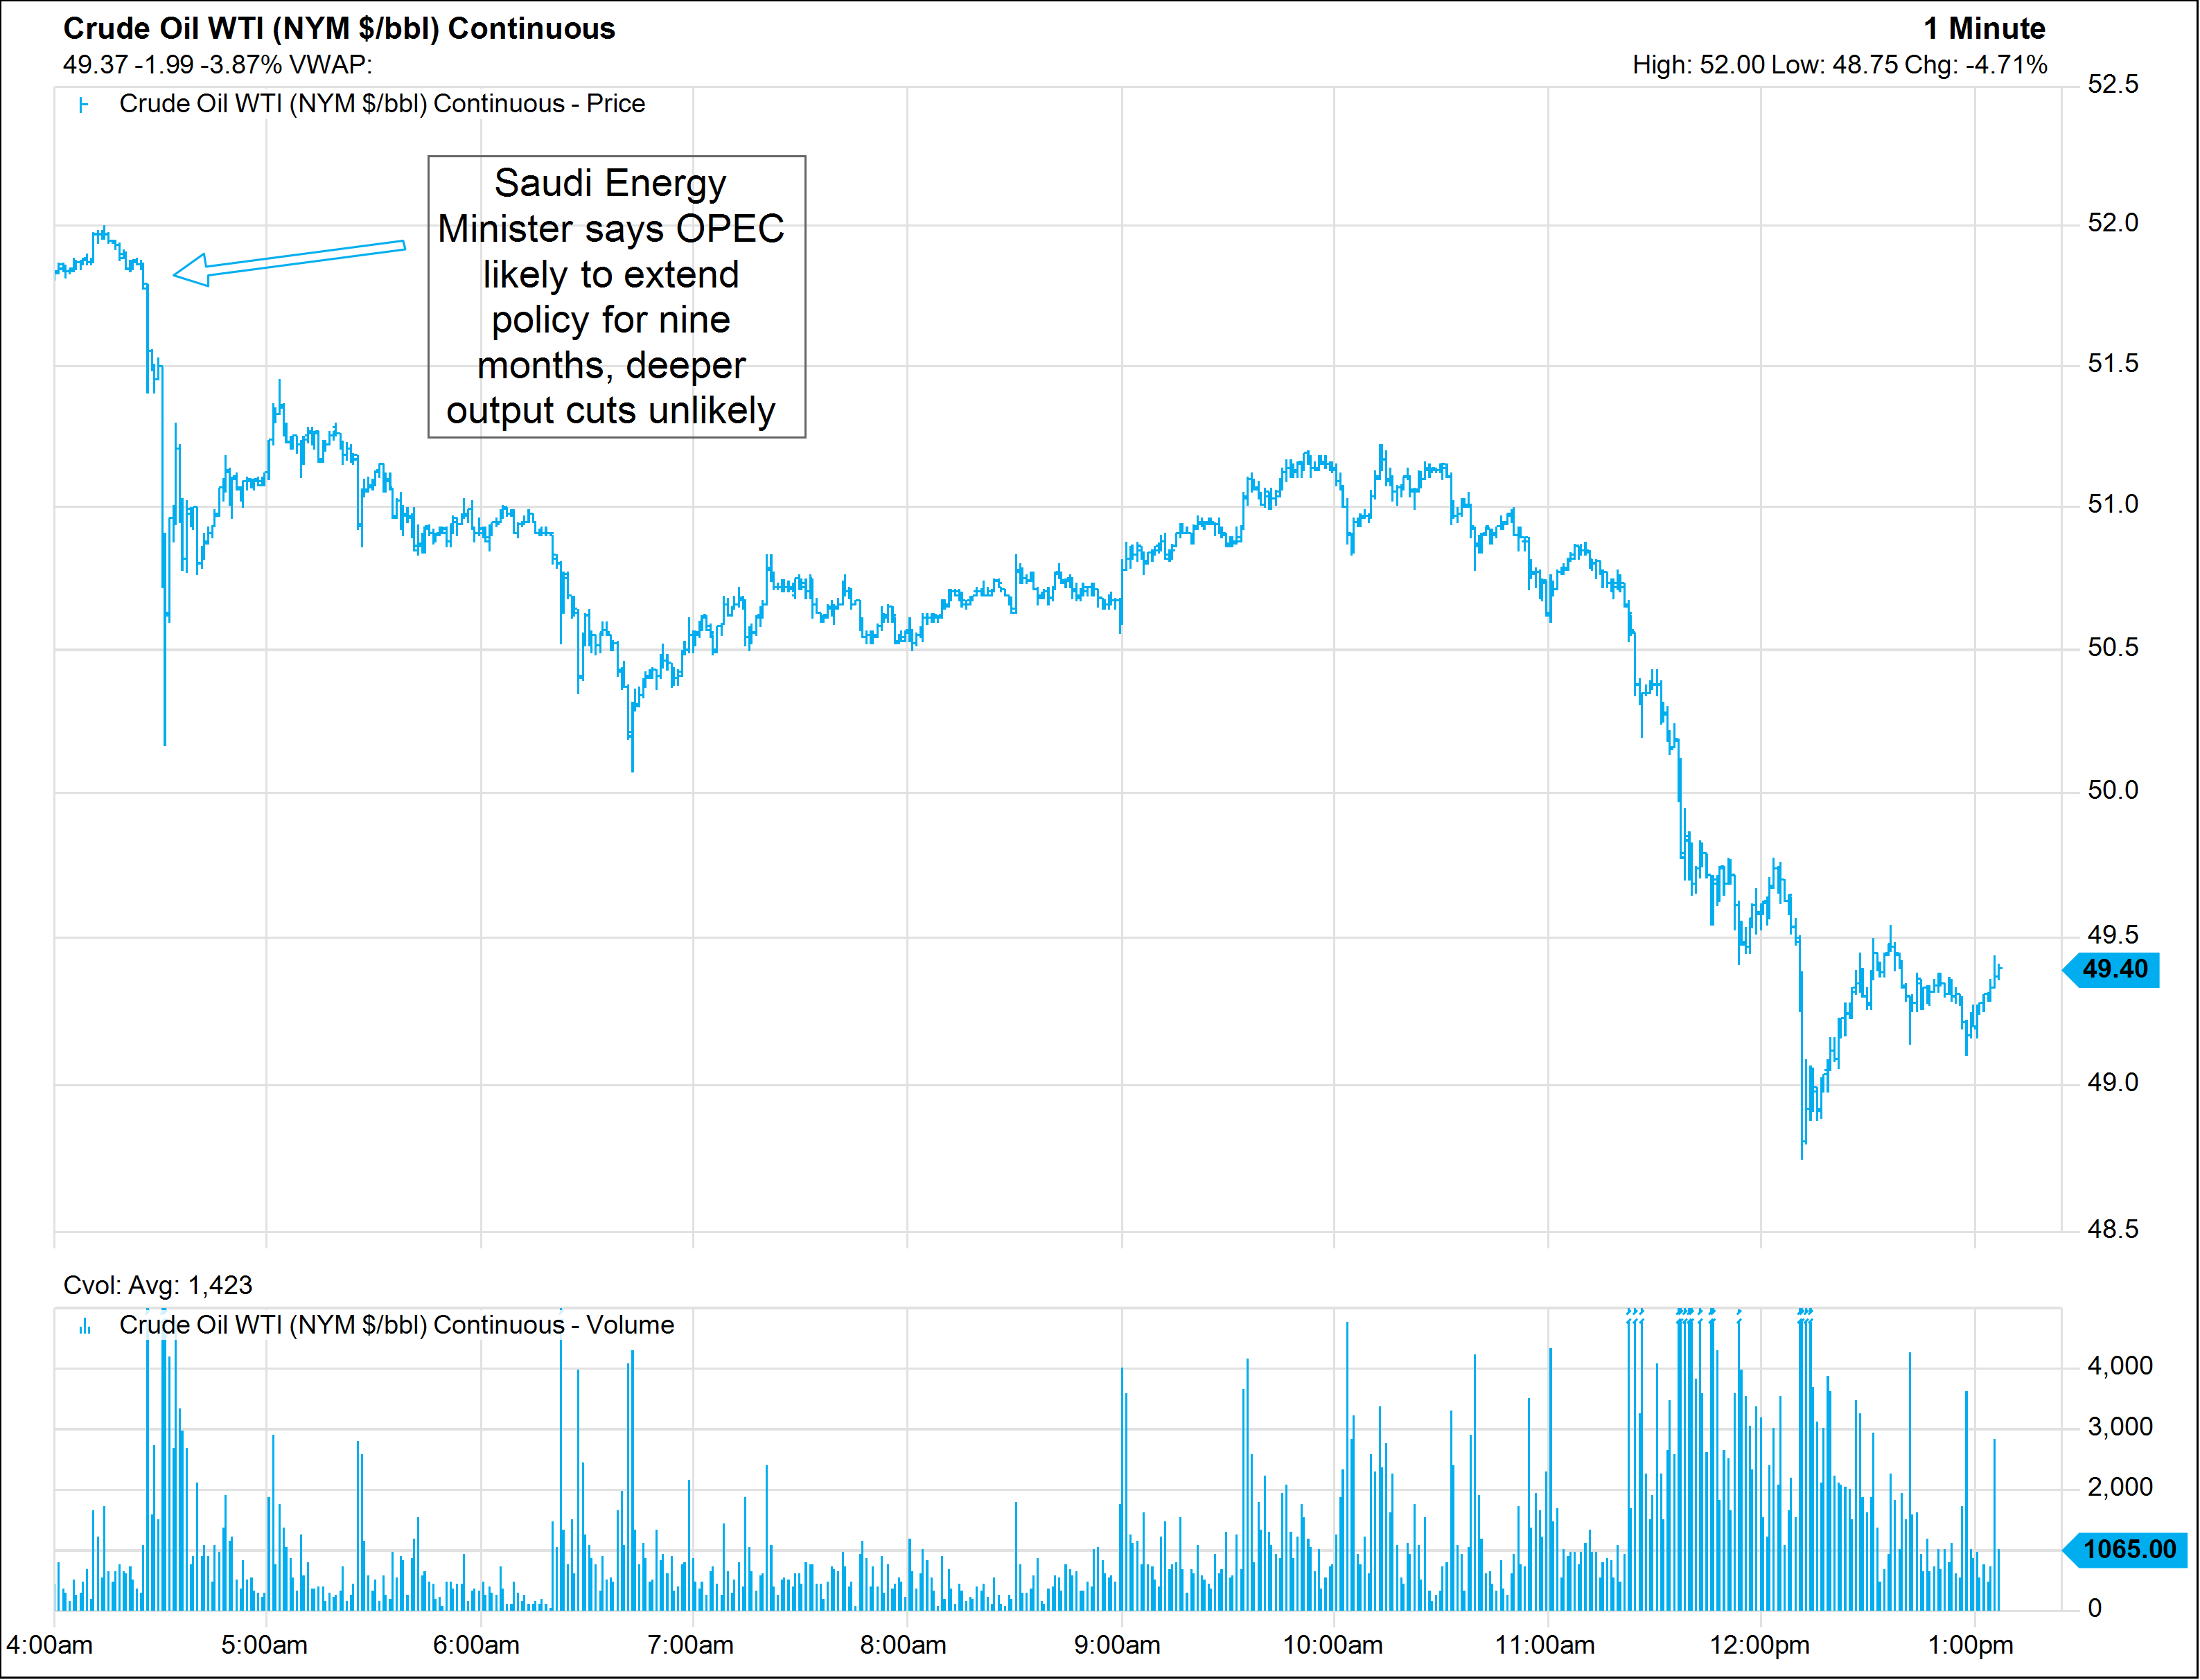 Crude Oil Price Chart 5 Years